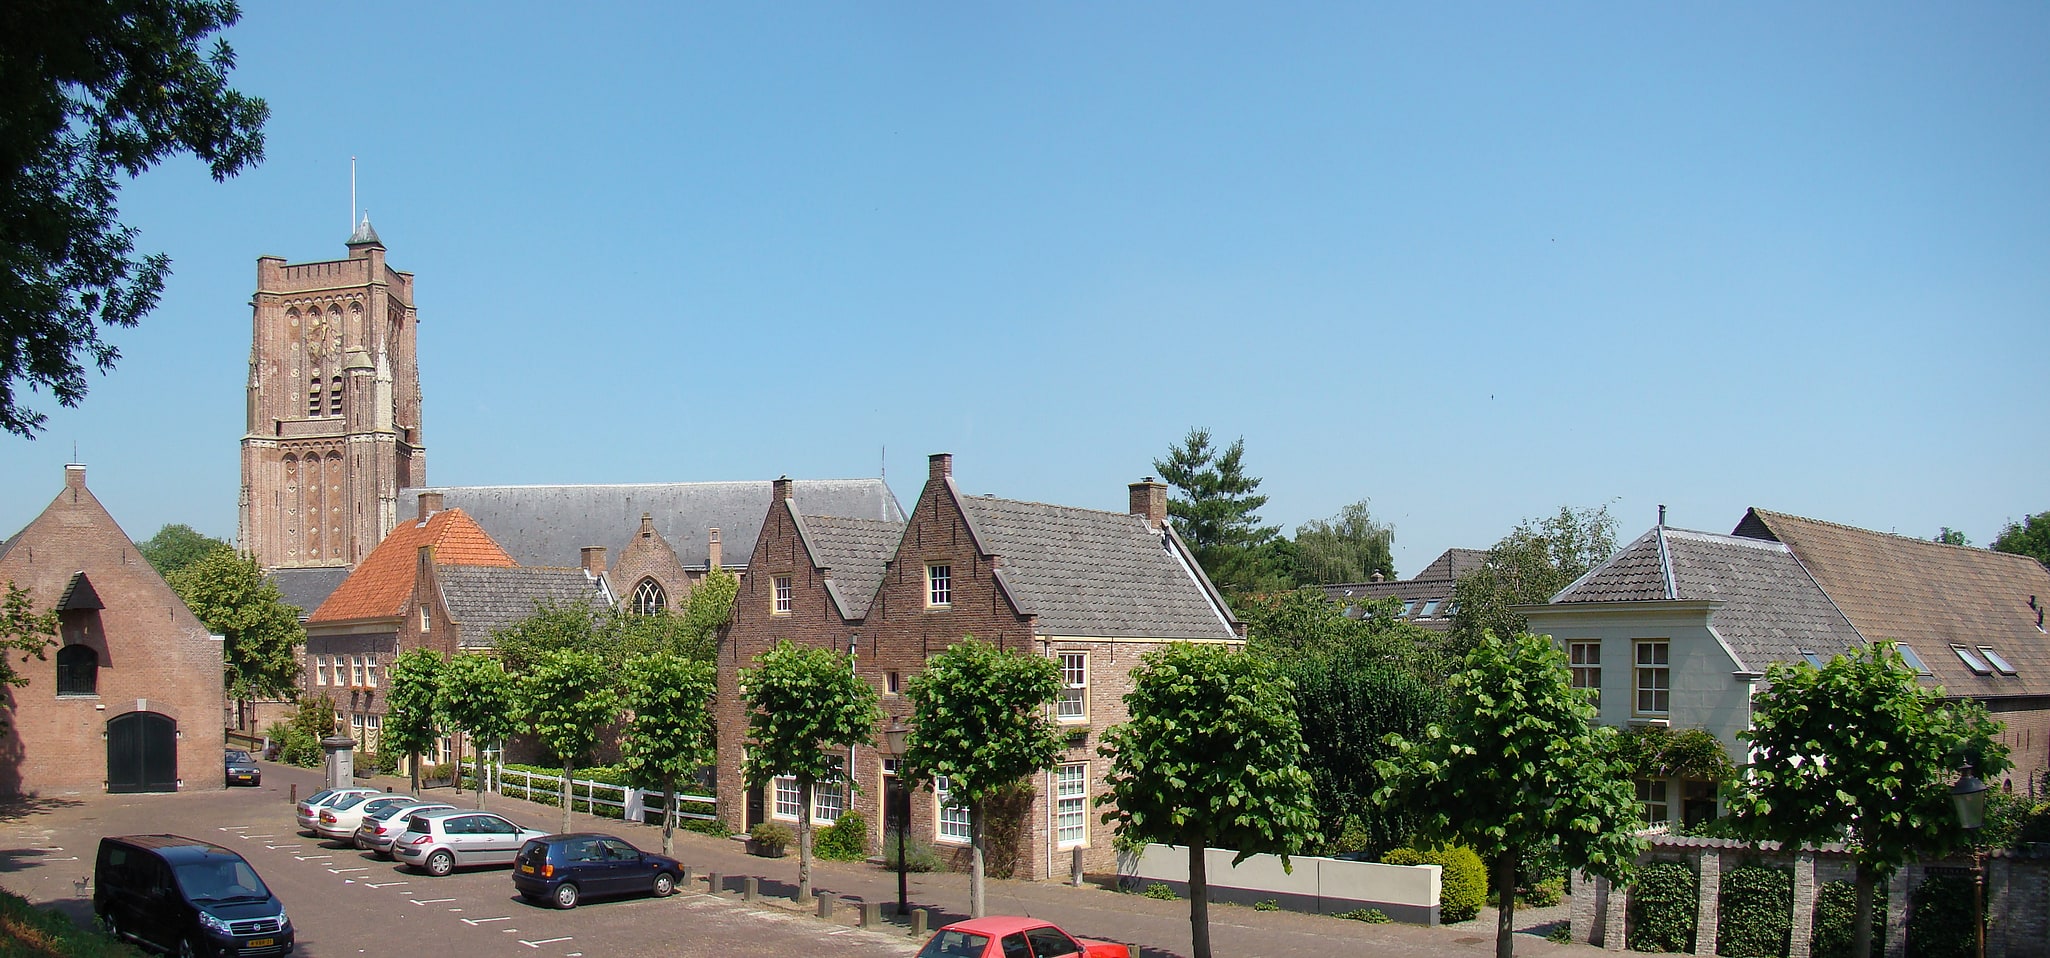 Woudrichem, Netherlands